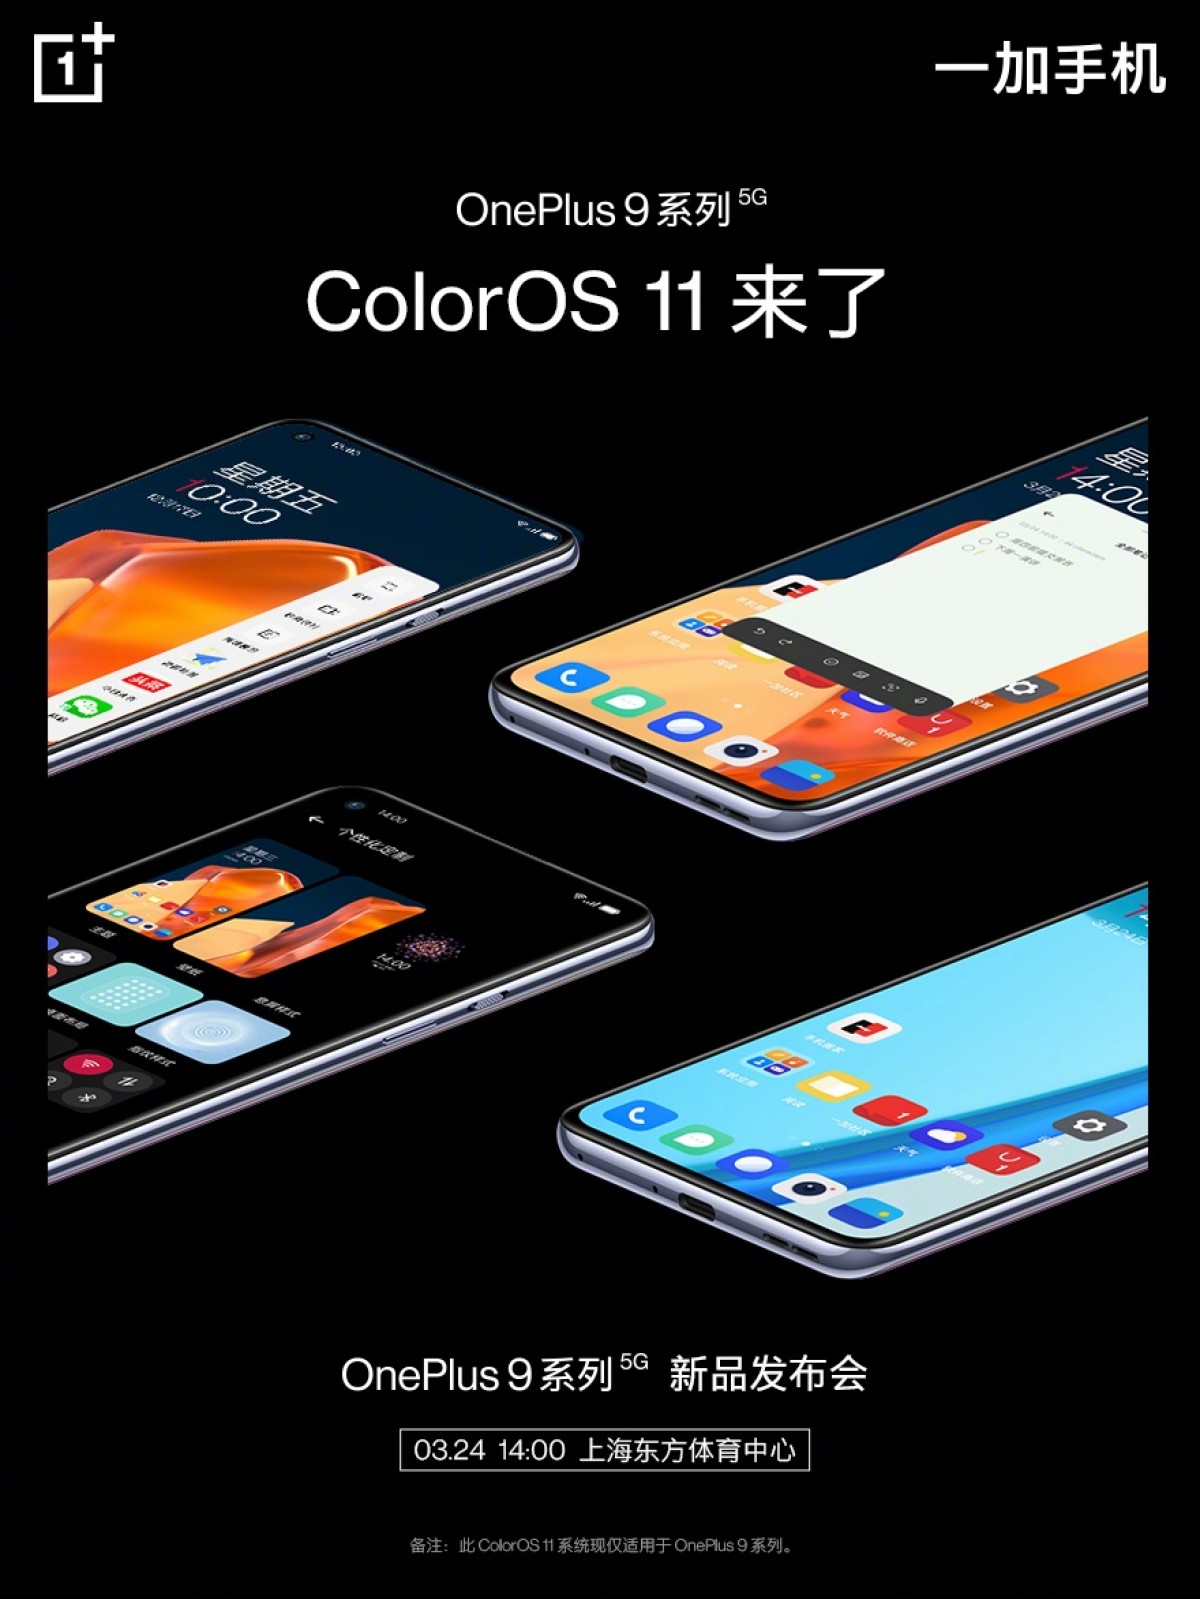 سلسلة ون بلس 9 ستستخدم واجهة ColorOS 11 في الصين